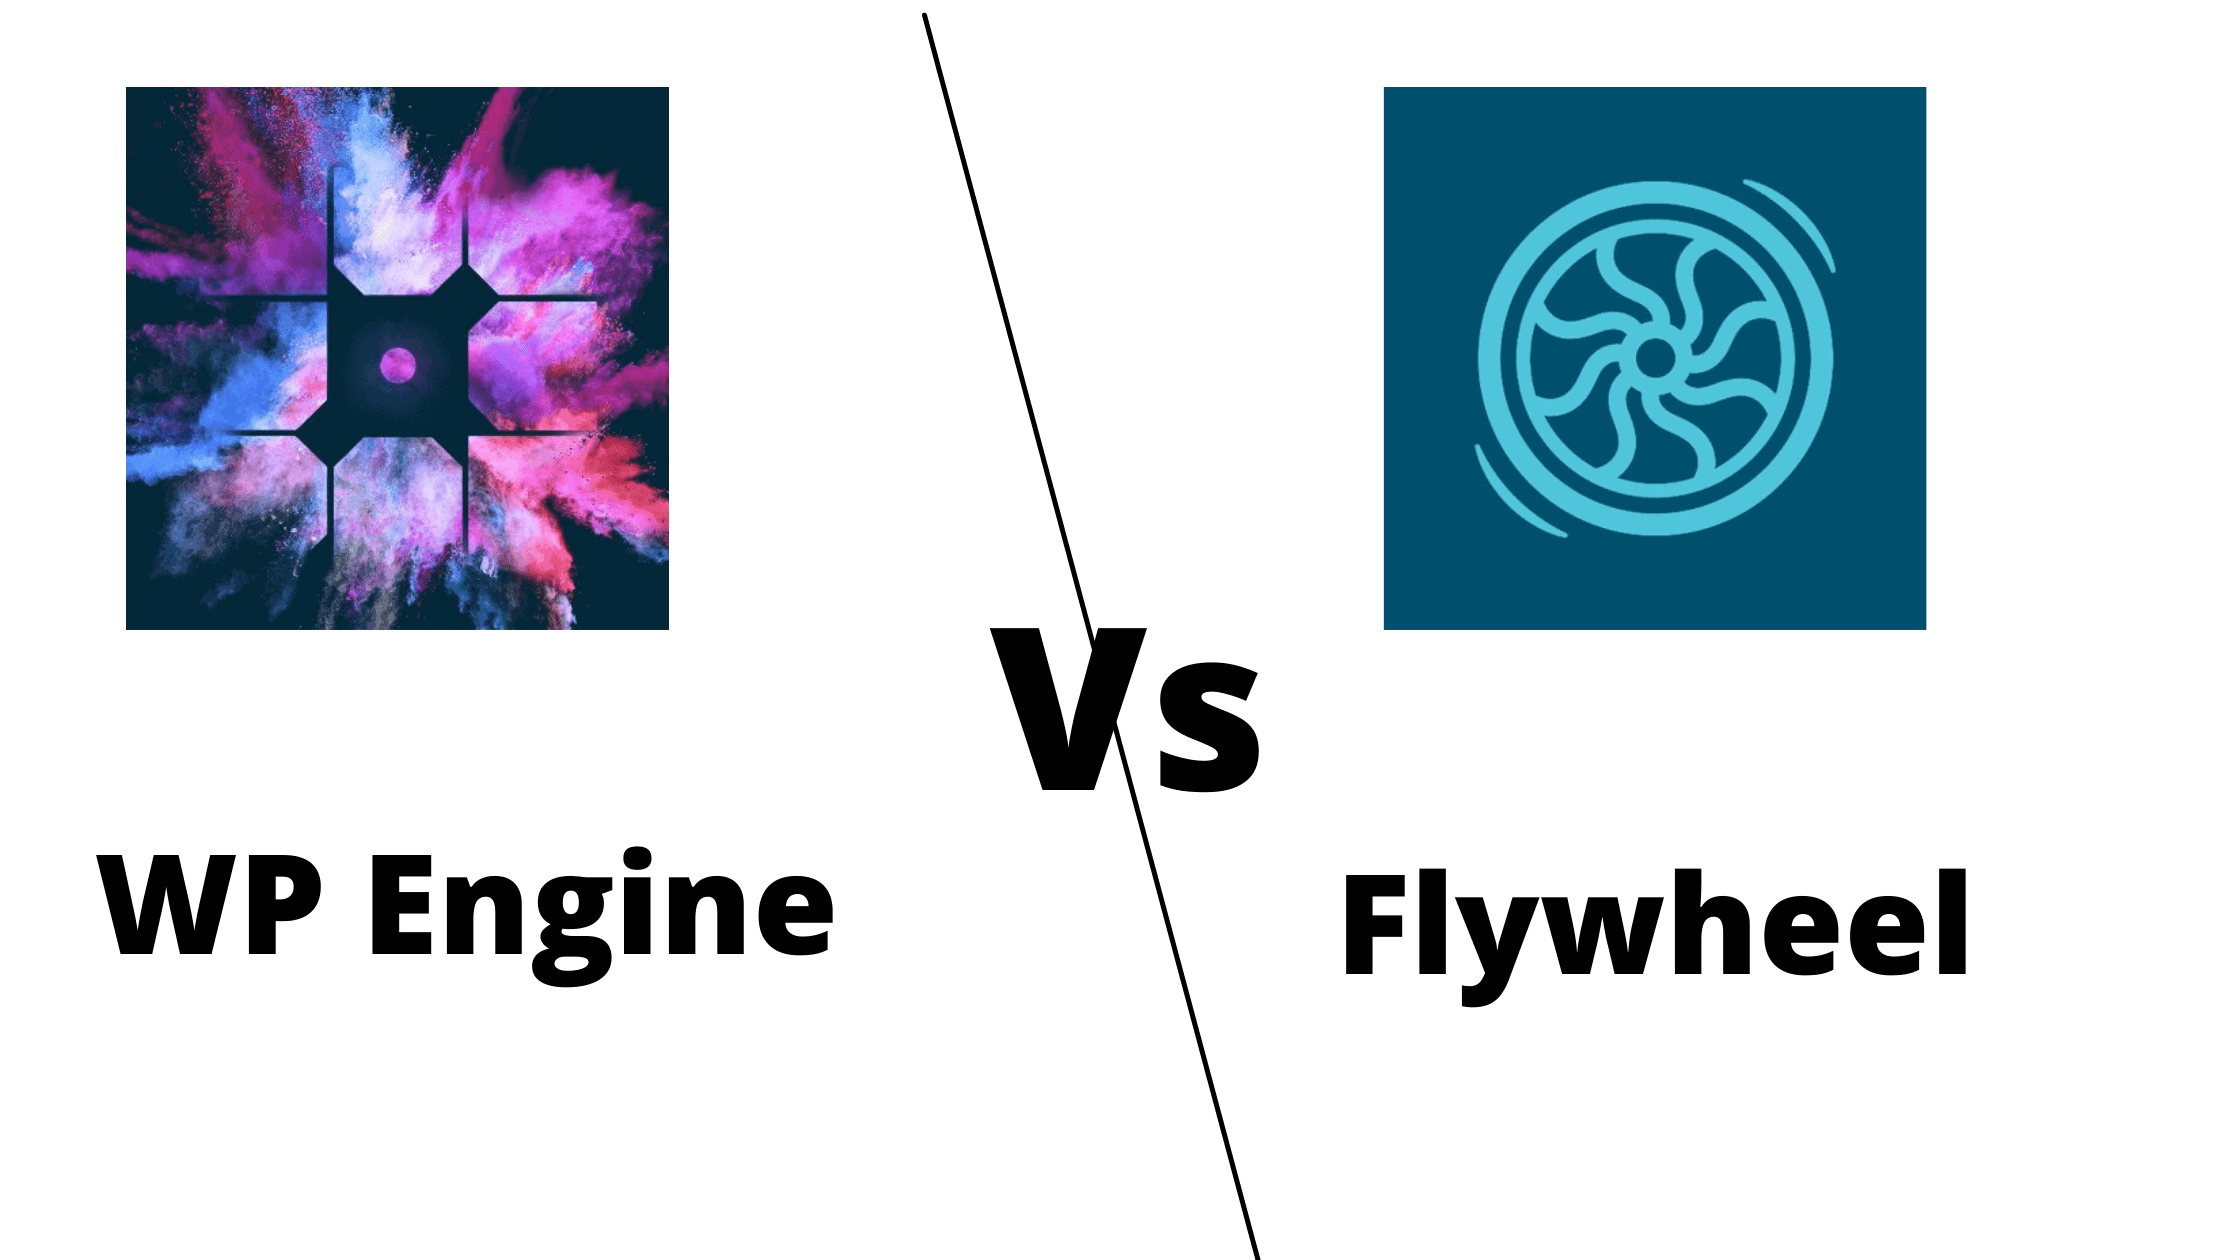 wp engine vs flywheel